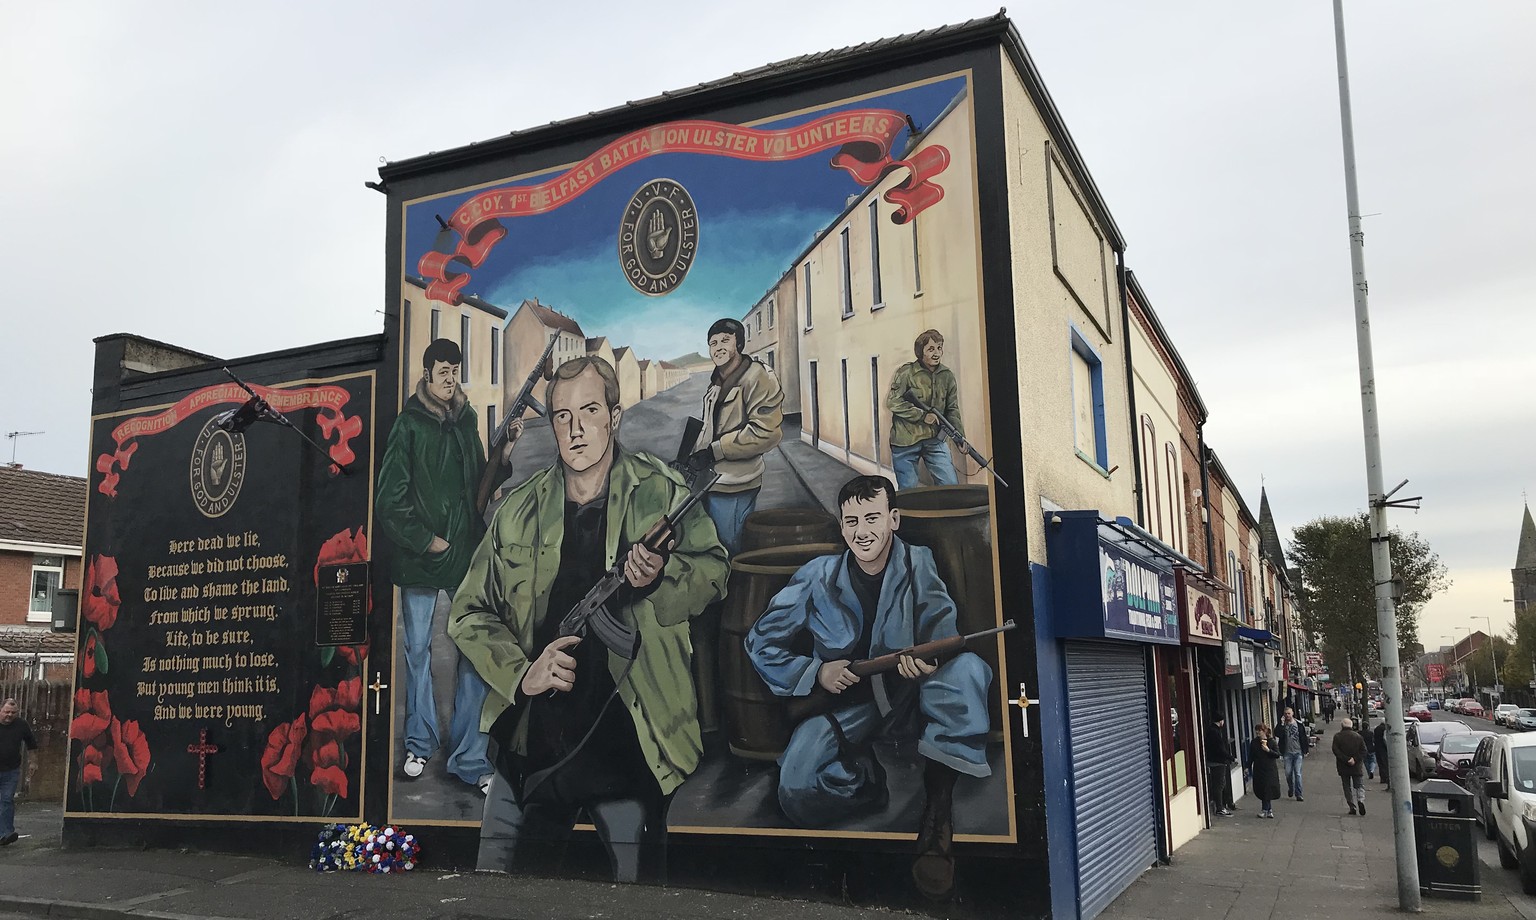 Frischer Blumenschmuck vor diesem Mural der Ulster Volunteer Force belegt: Der Nordirland-Konflikt ist wohl noch lange nicht beigelegt.